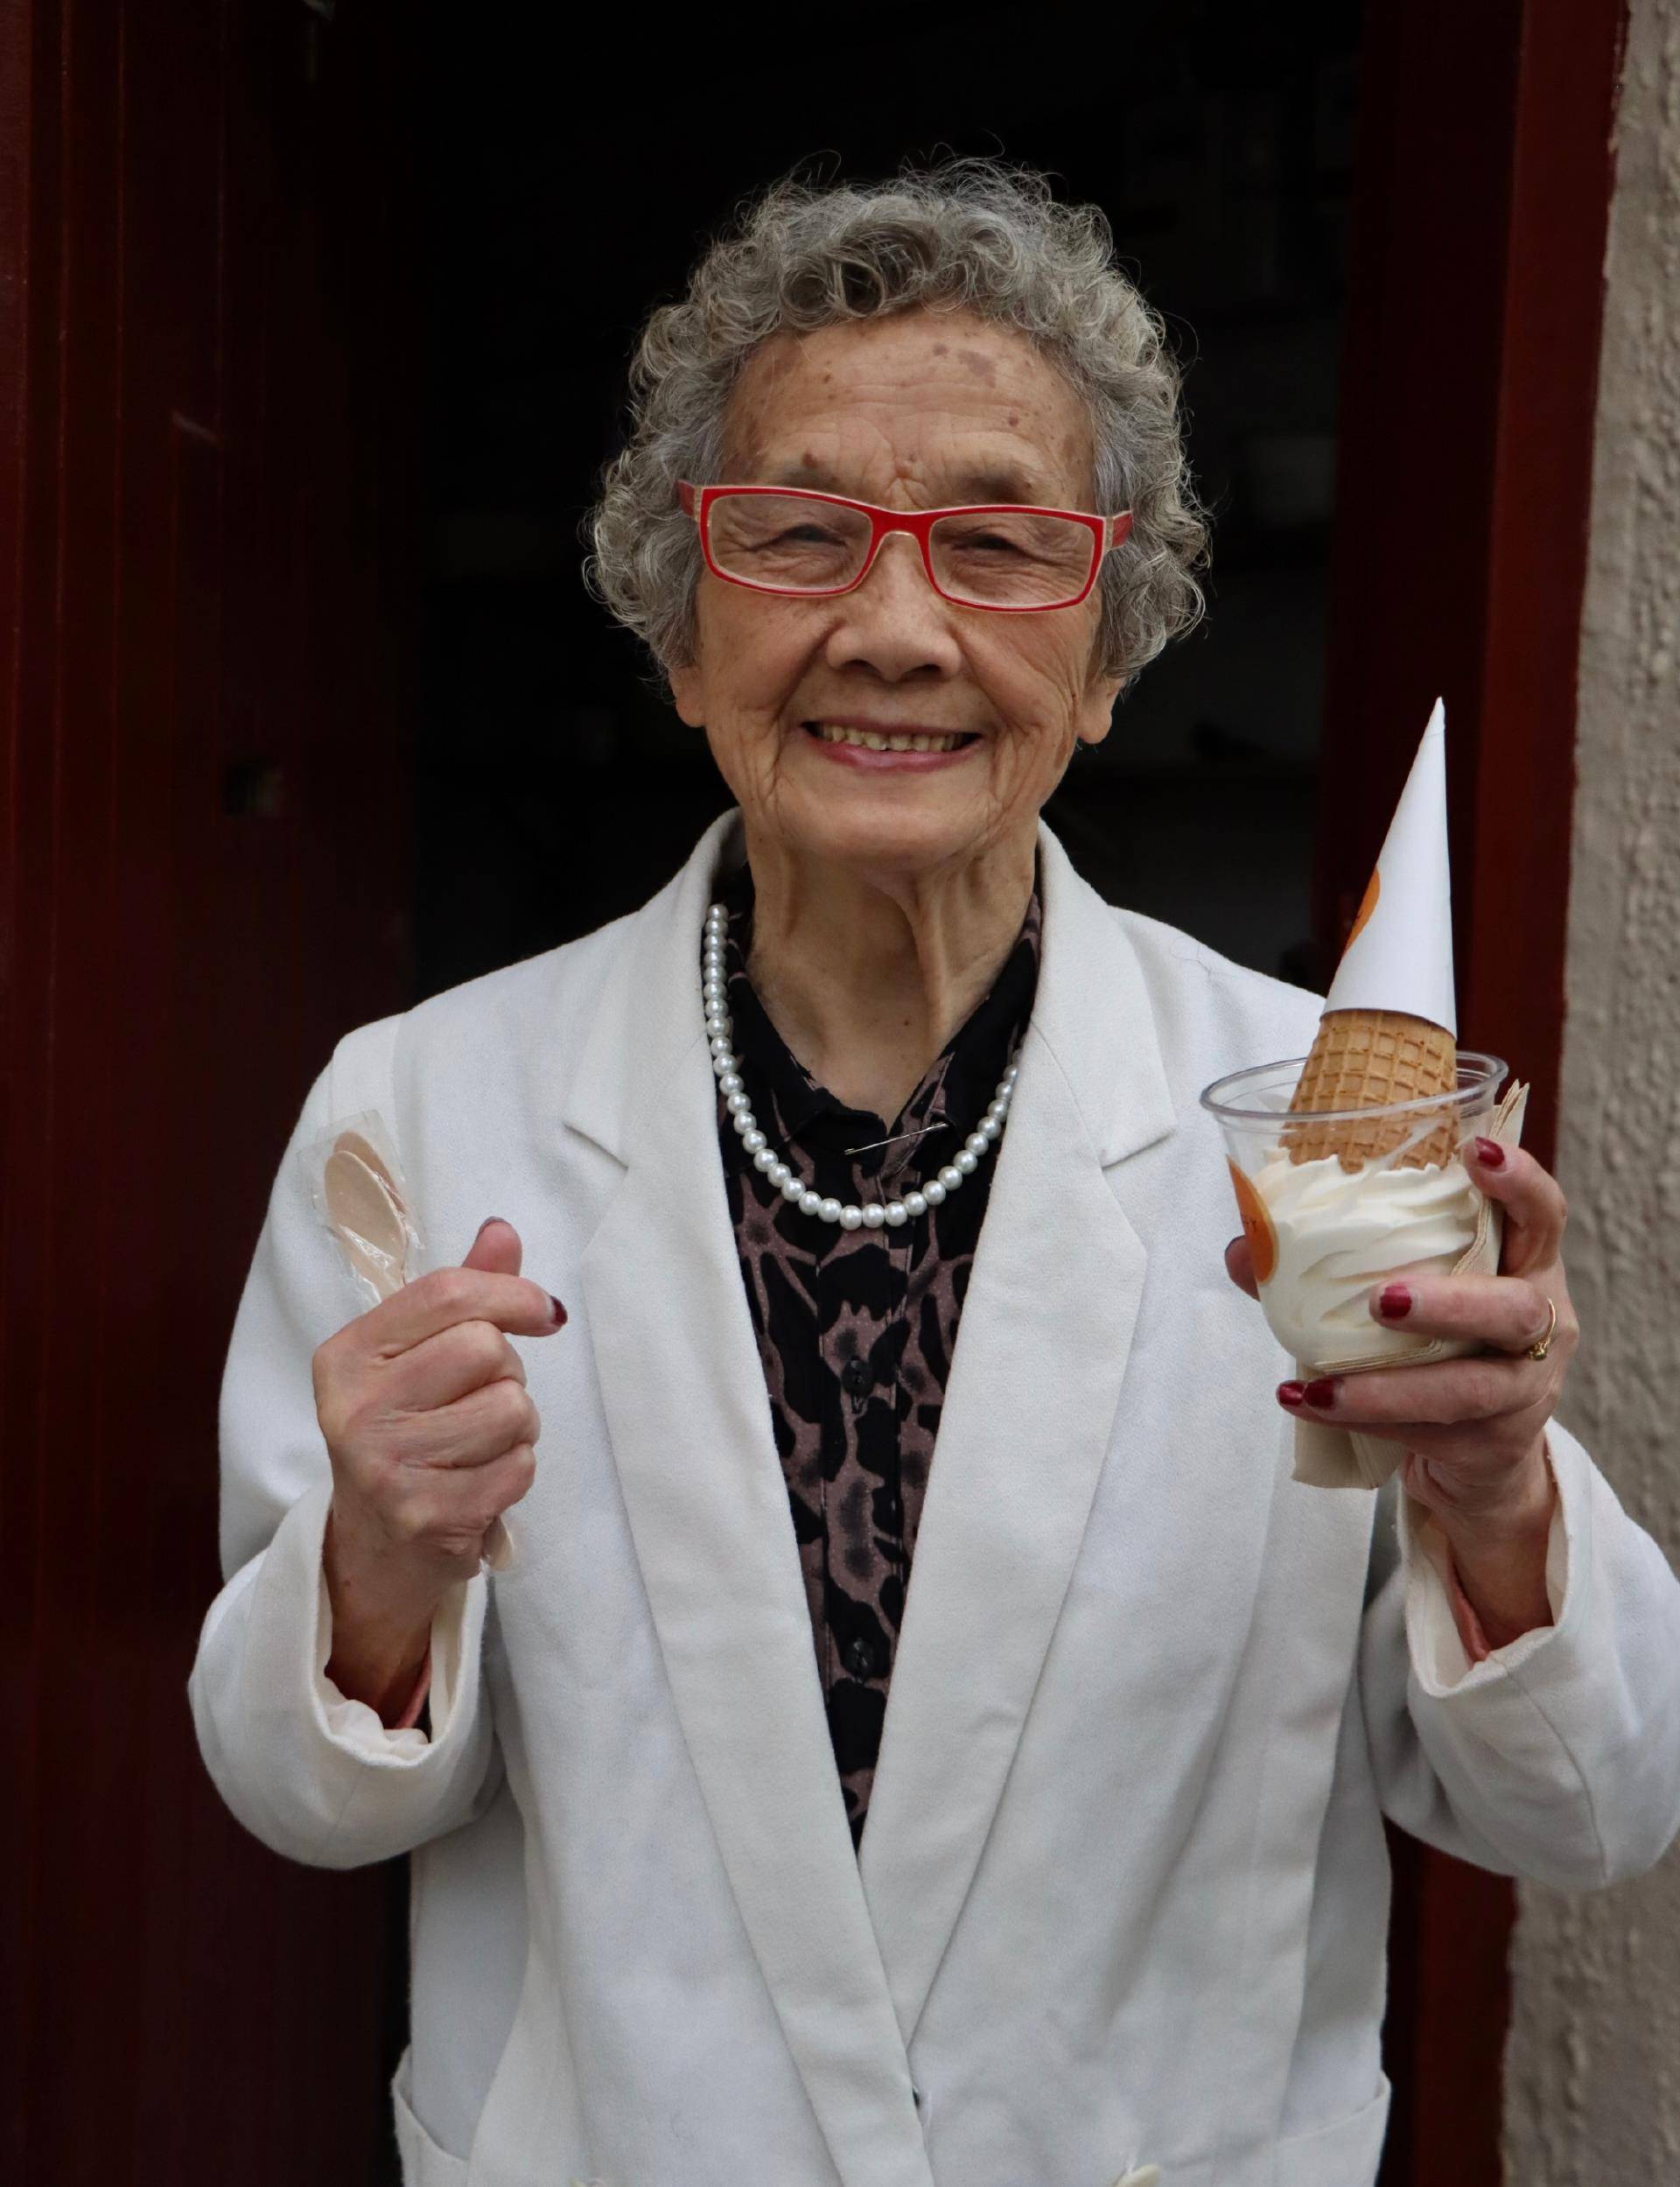 原创90岁的奶奶耄耋之年穿衣不刻意扮嫩也时髦可爱